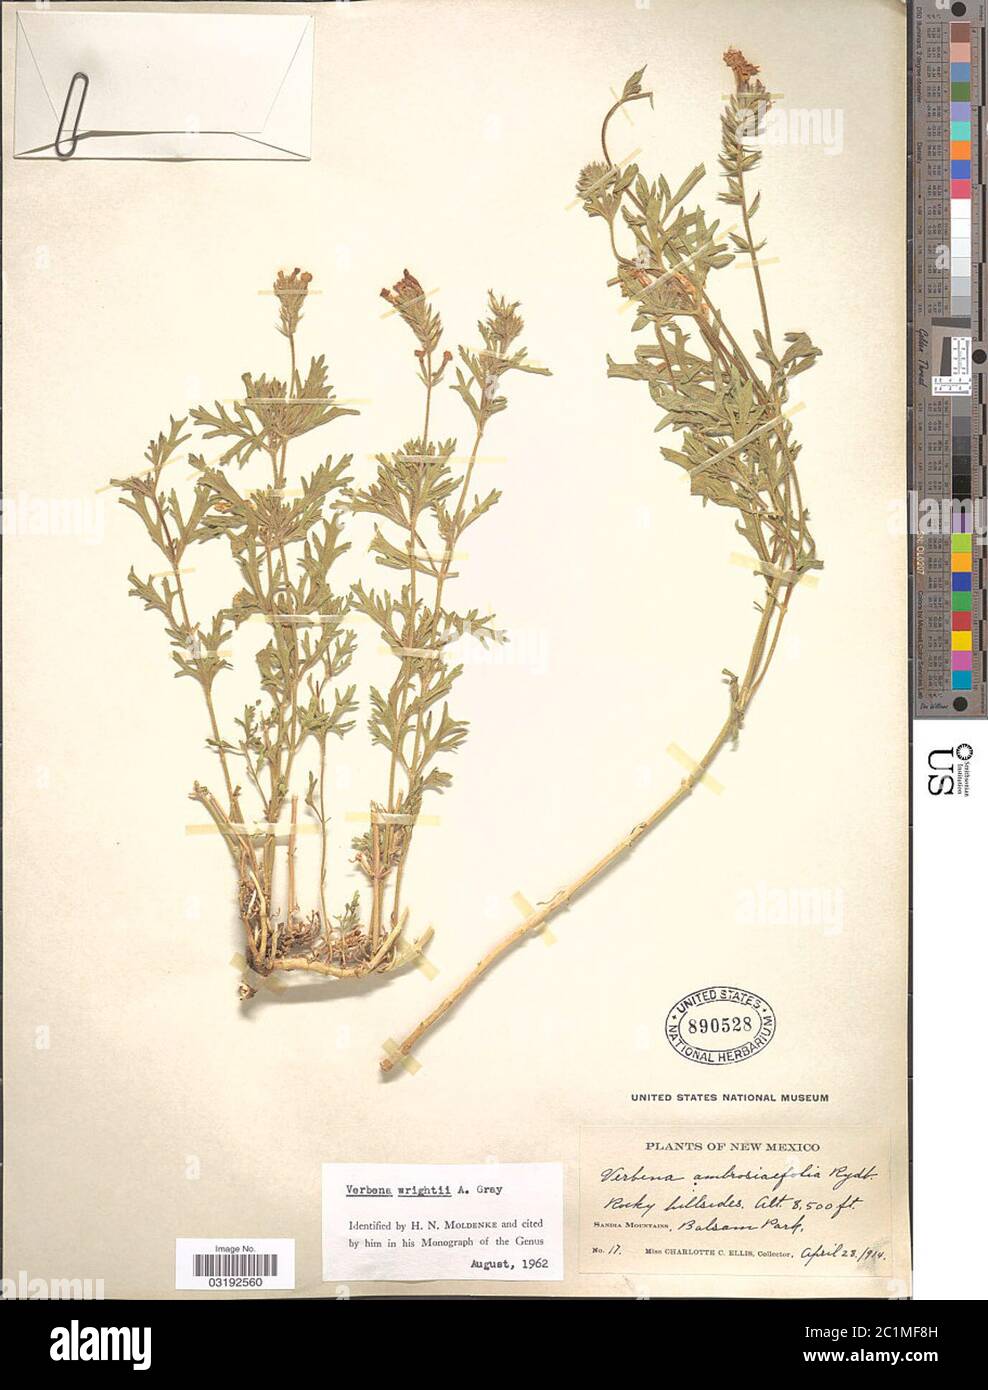 Verbena wrightii A Gray Verbena wrightii A Gray. Stock Photo